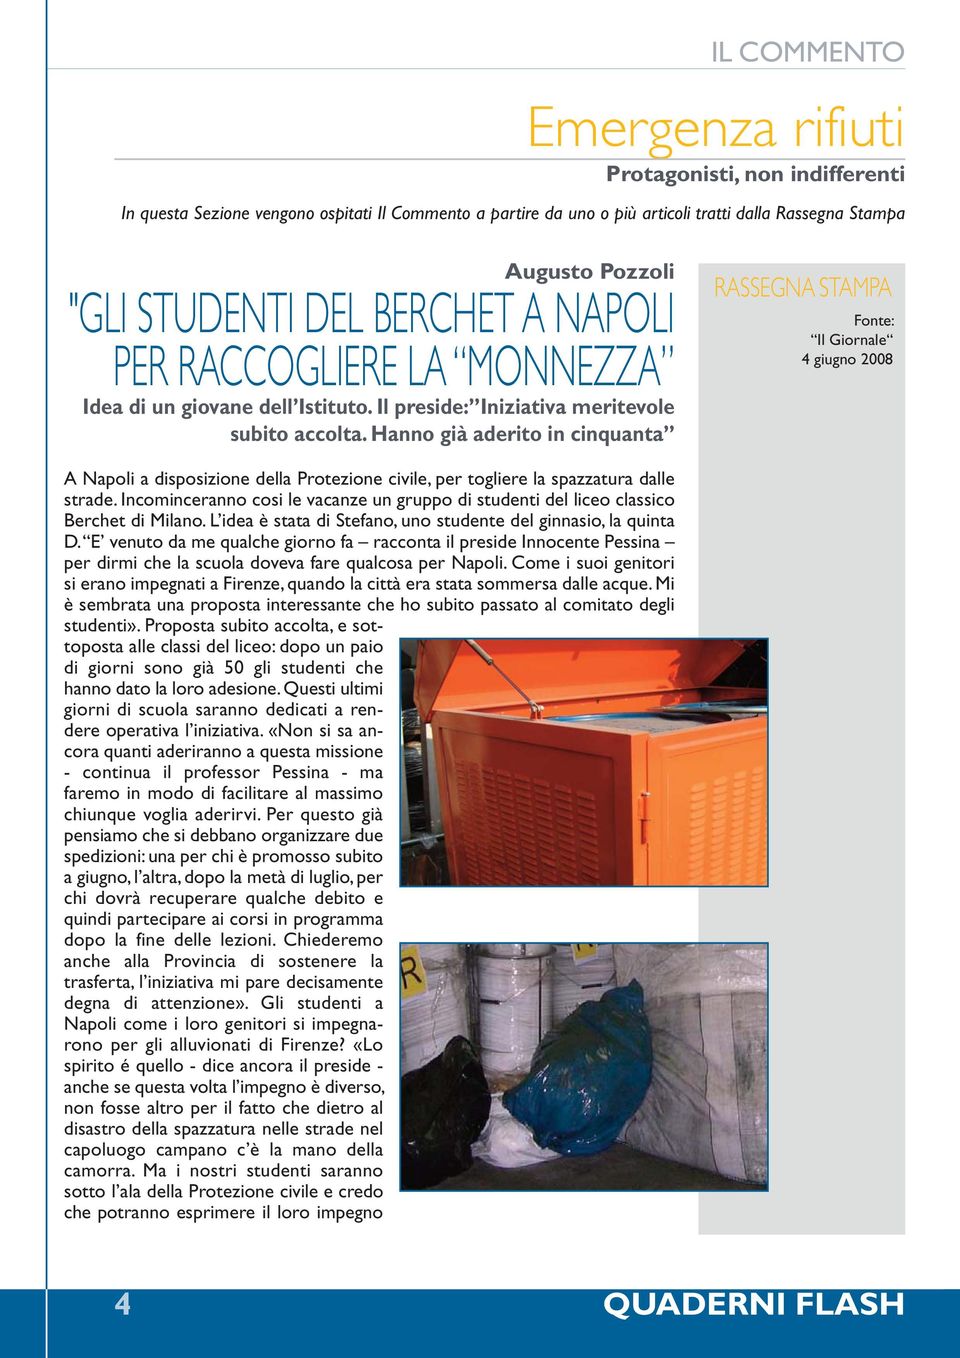 Hanno già aderito in cinquanta RASSEGNA STAMPA Fonte: Il Giornale 4 giugno 2008 A Napoli a disposizione della Protezione civile, per togliere la spazzatura dalle strade.